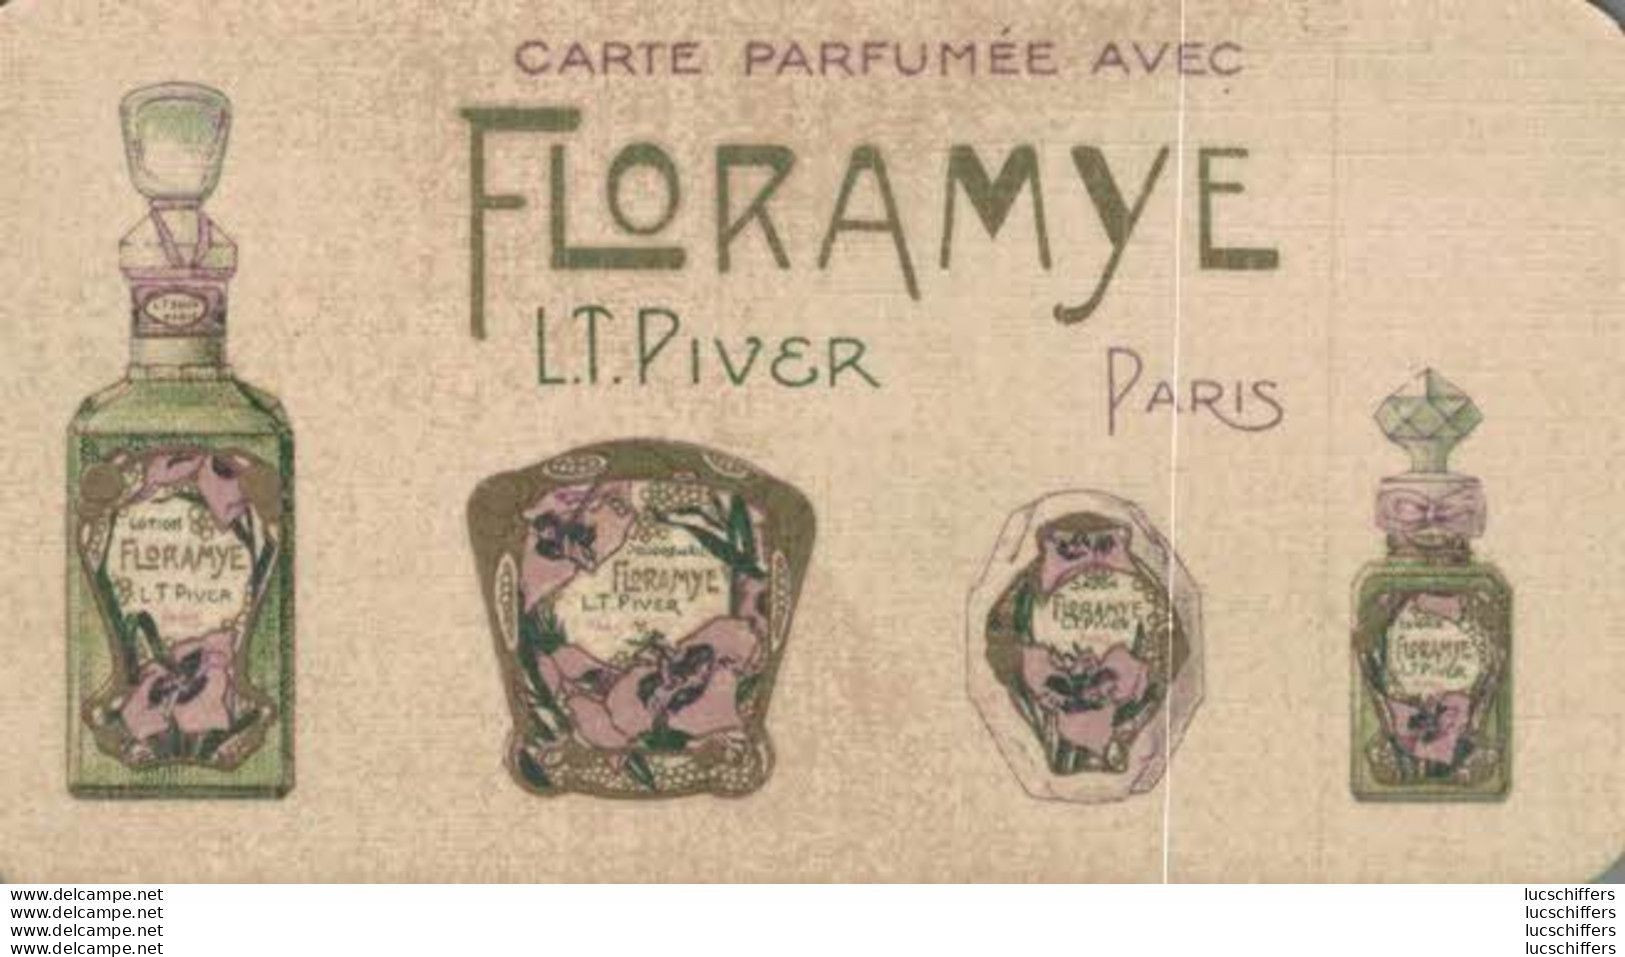 Carte Parfumée Avec Floramye - L.T.Piver - Calendrier 1927 - 2 Scans - Vintage (until 1960)